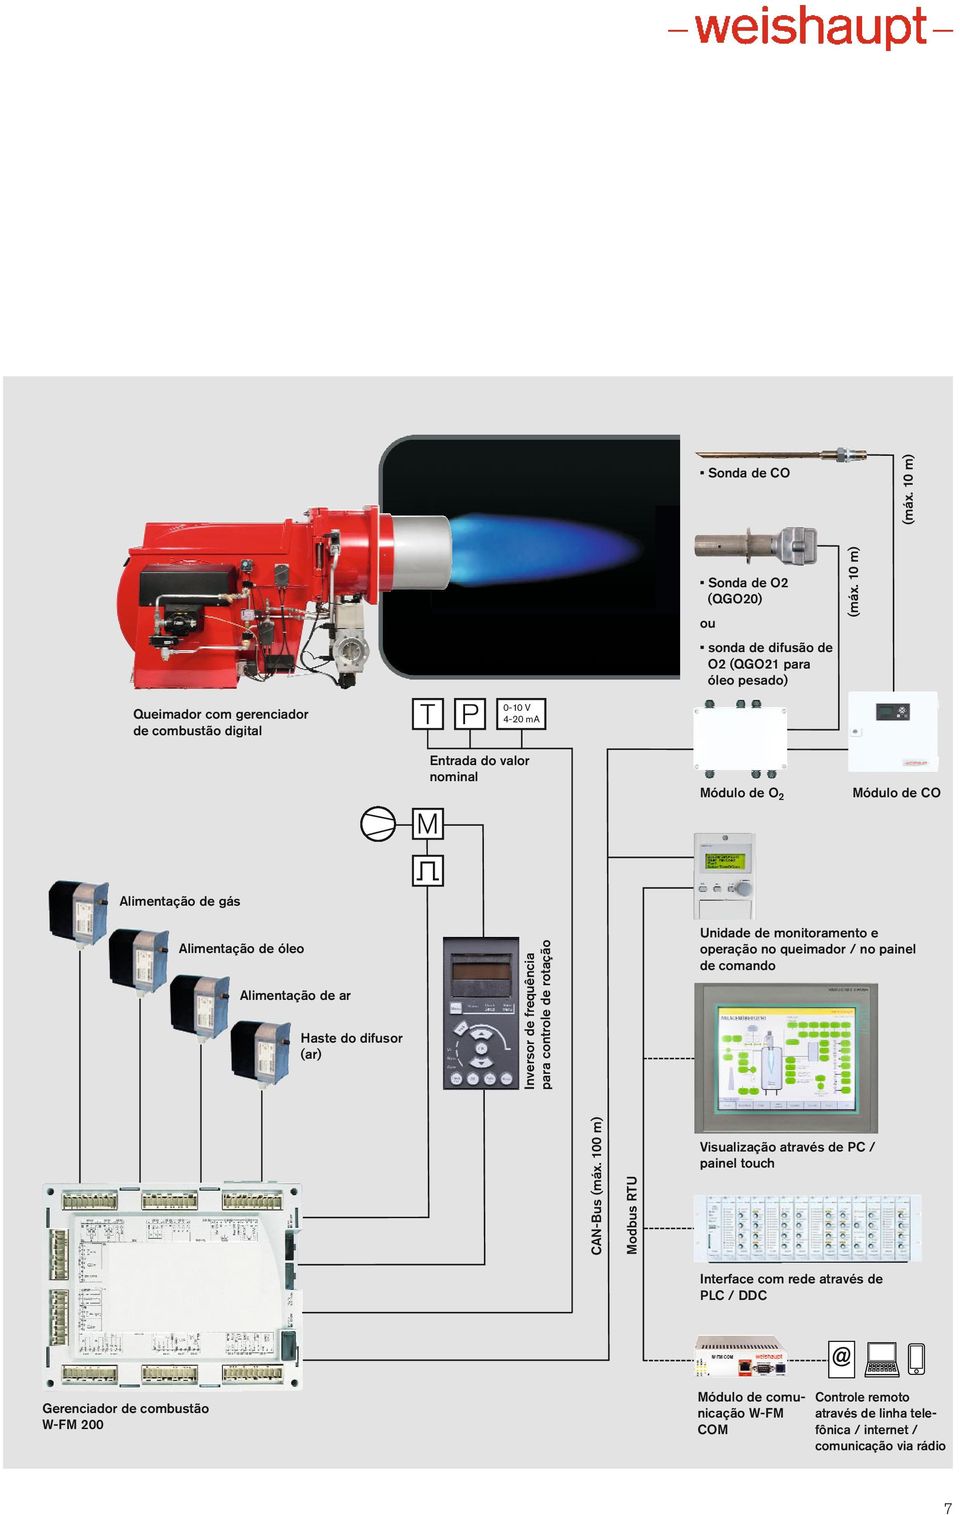 Alimentação de ar Haste do difusor (ar) Inversor de frequência para controle de rotação Unidade de monitoramento e operação no queimador / no painel de comando